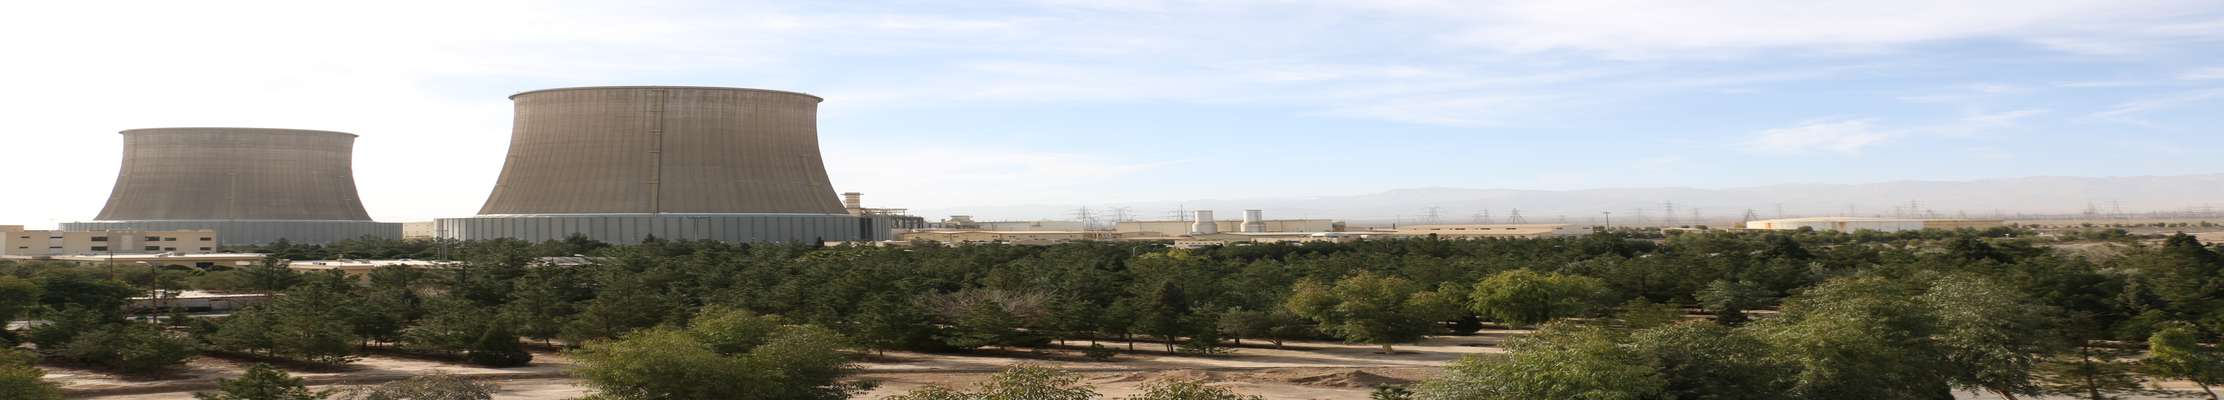 آبیاری فضای سبز نیروگاه یزد با استفاده از پساب تولیدی